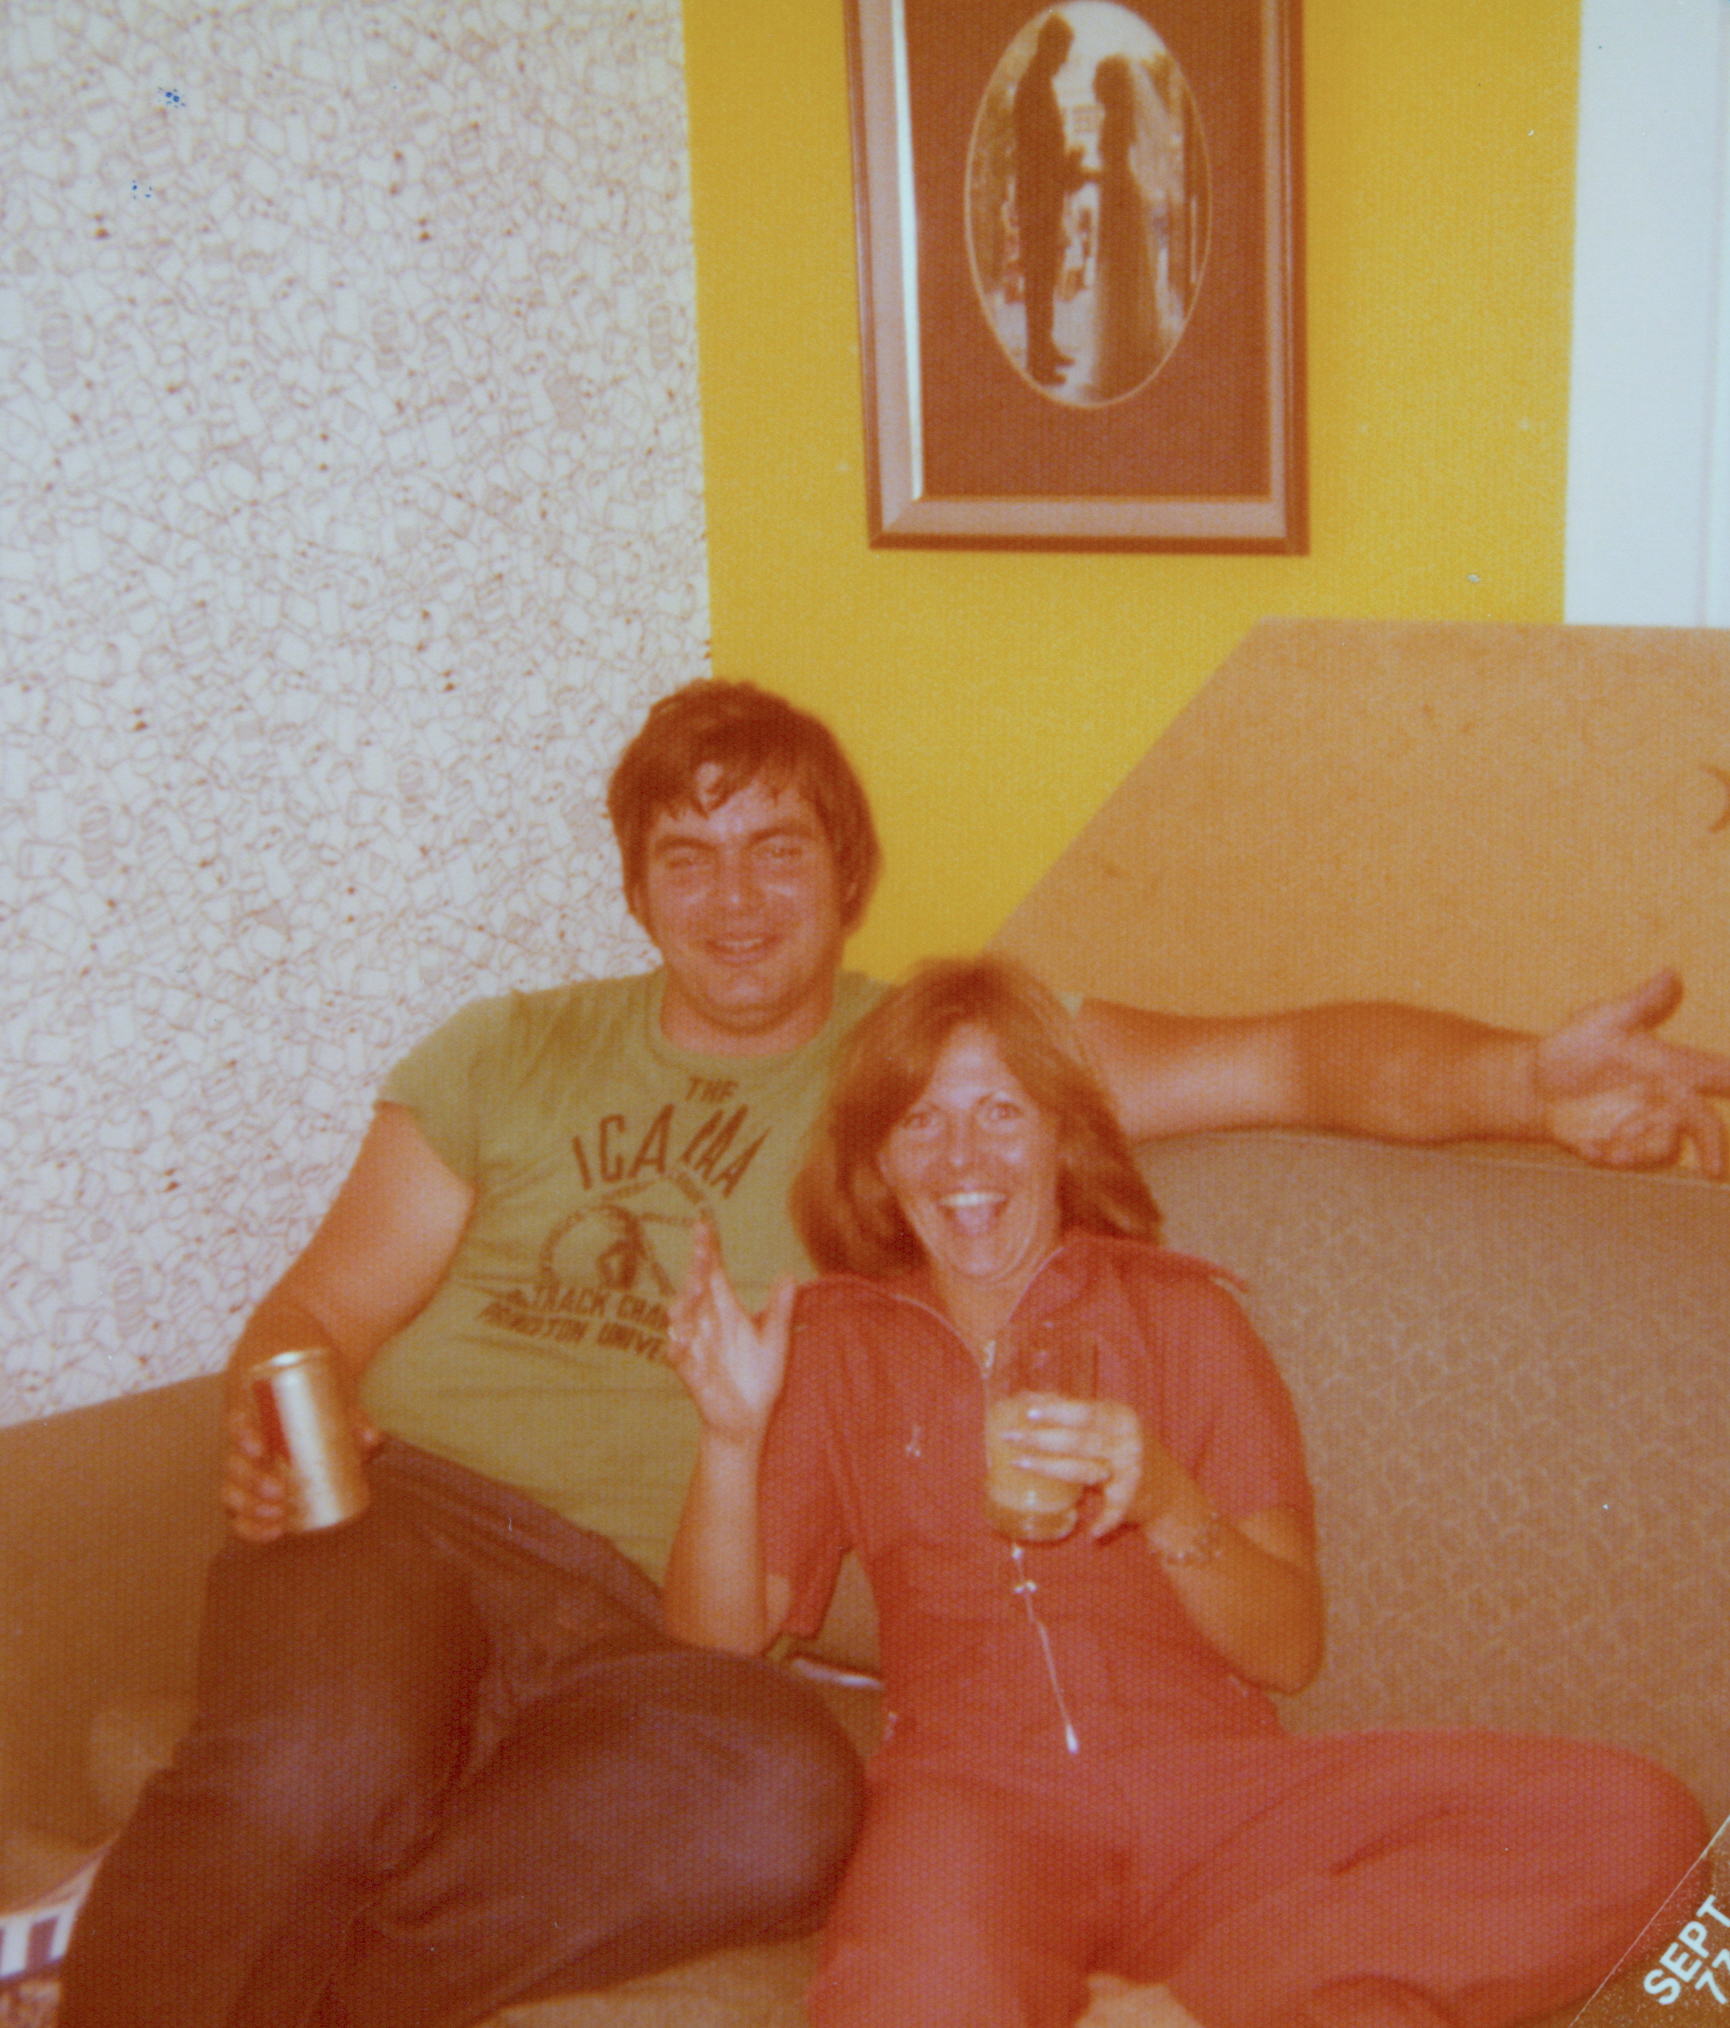 1973 Grin and Bernard